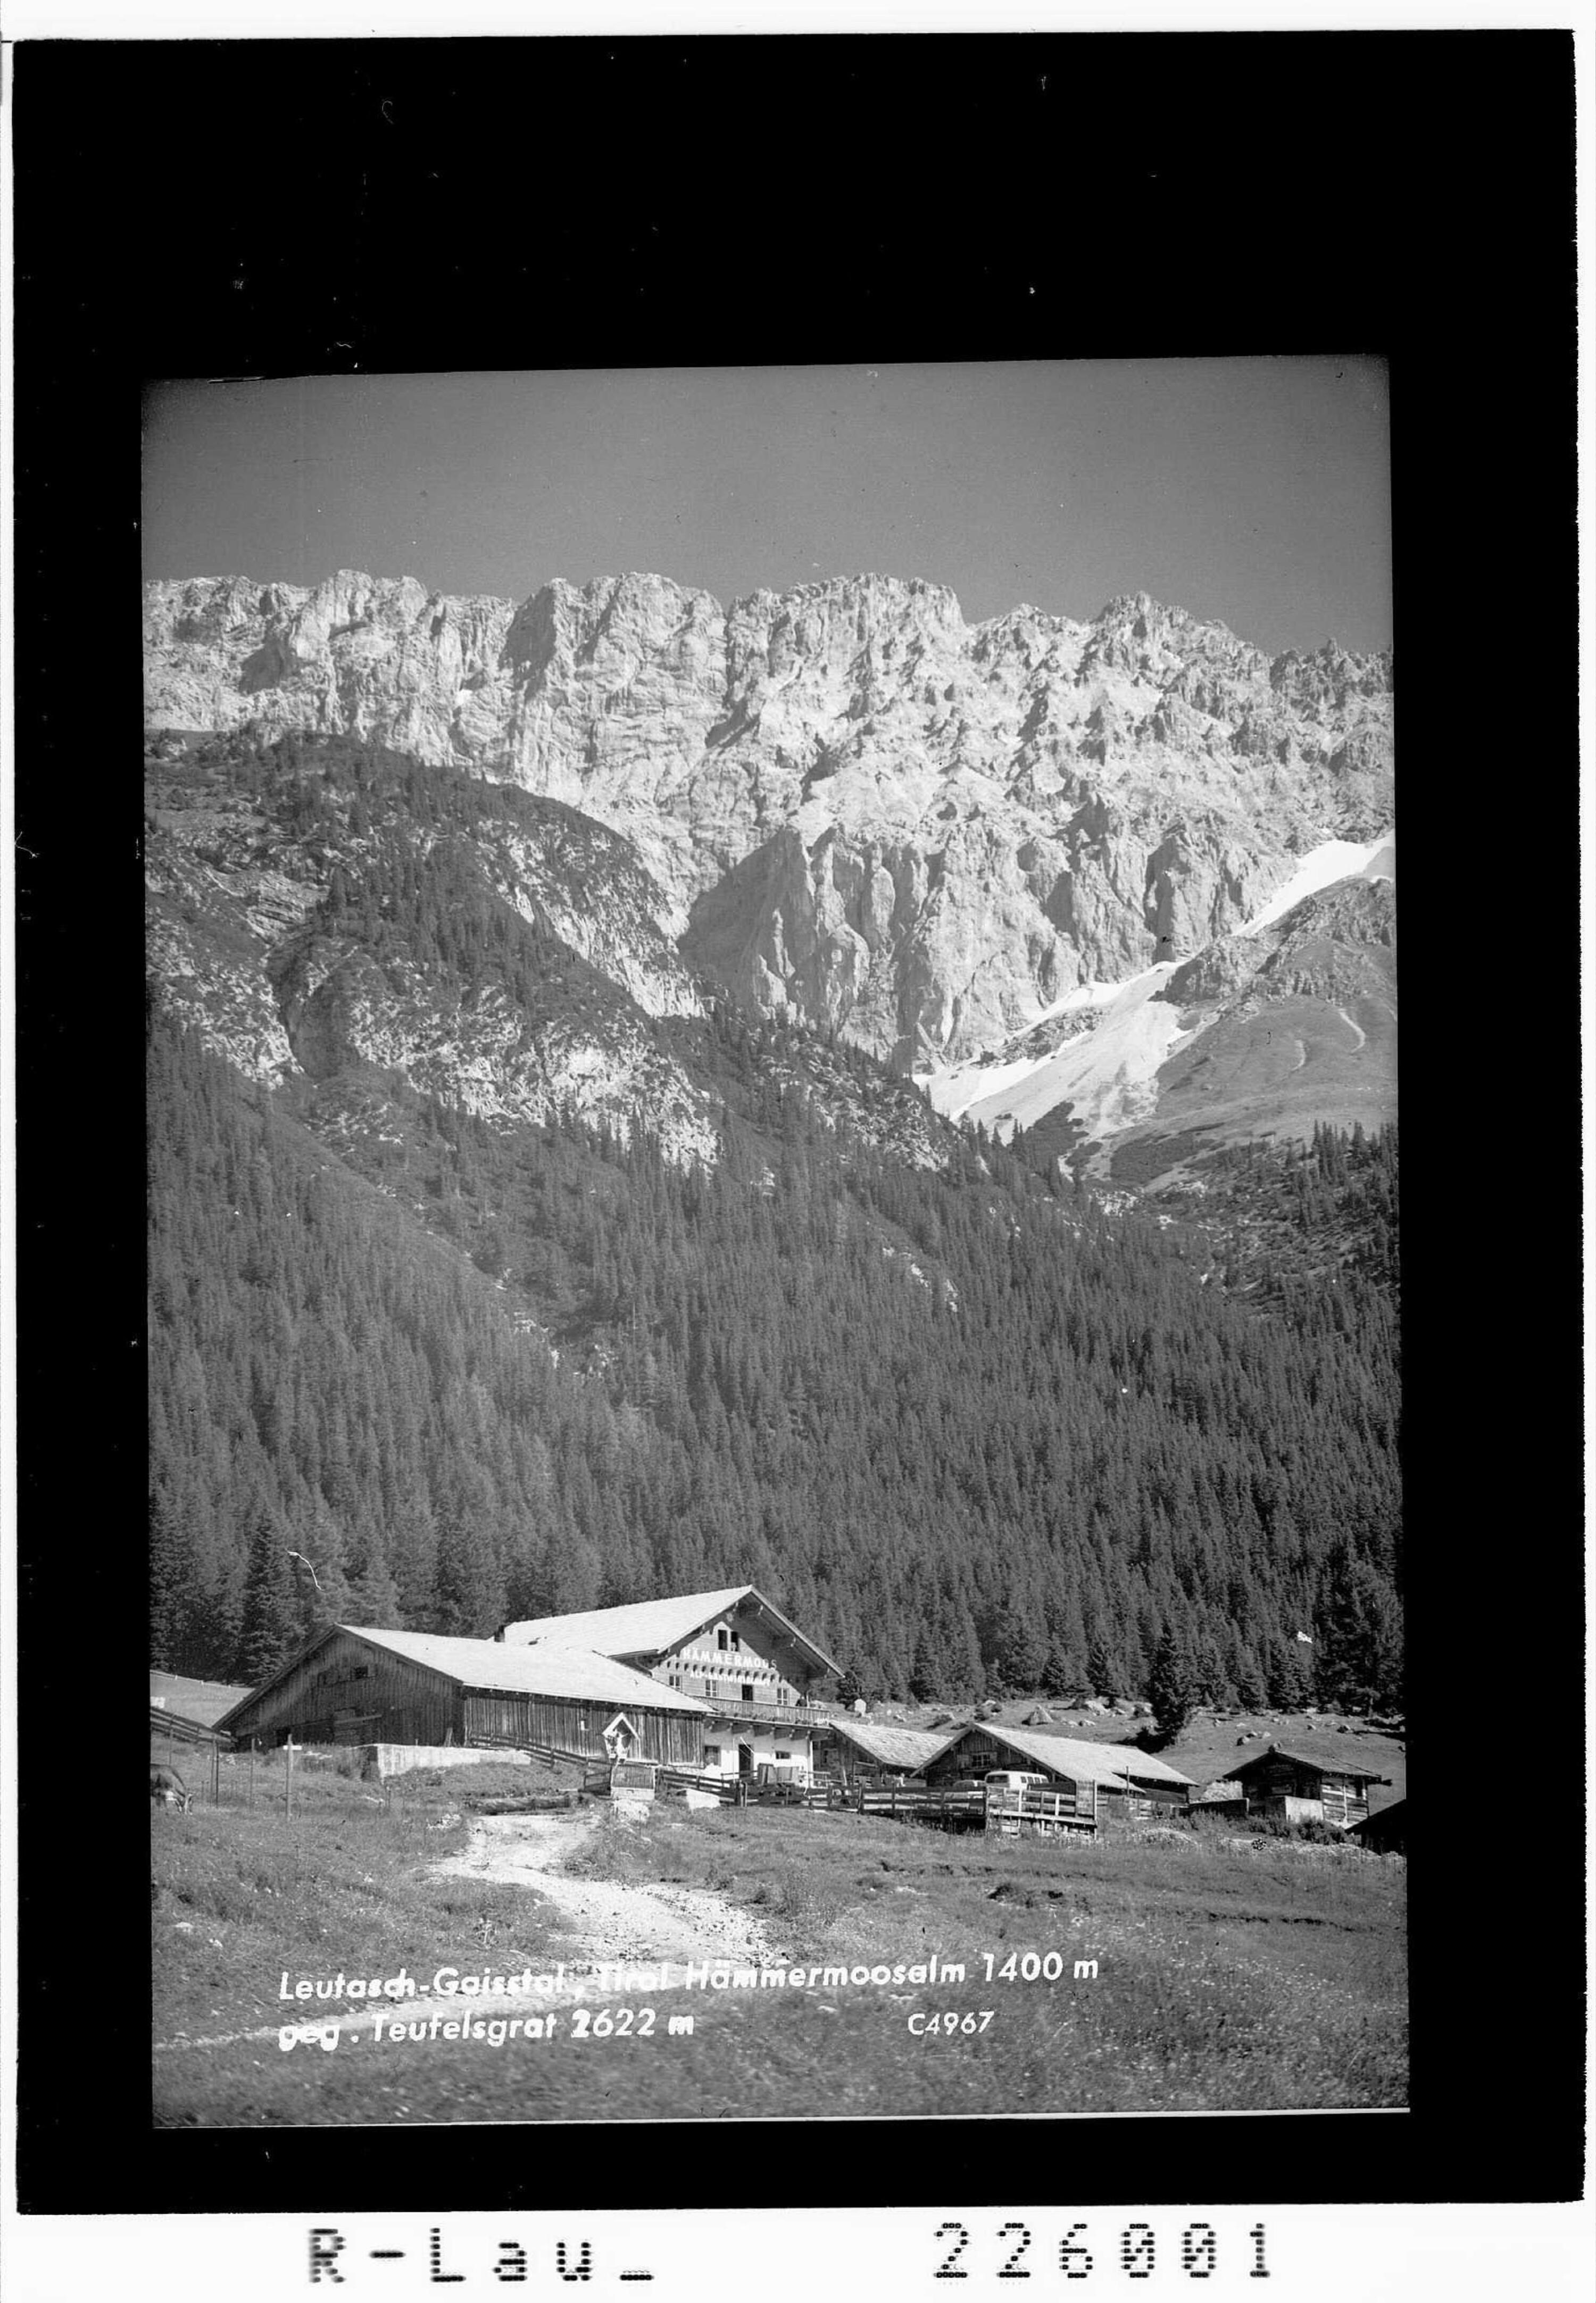 Leutasch - Gaistal / Tirol / Hämmermoosalm 1400 m gegen Teufelsgrat 2622 m></div>


    <hr>
    <div class=